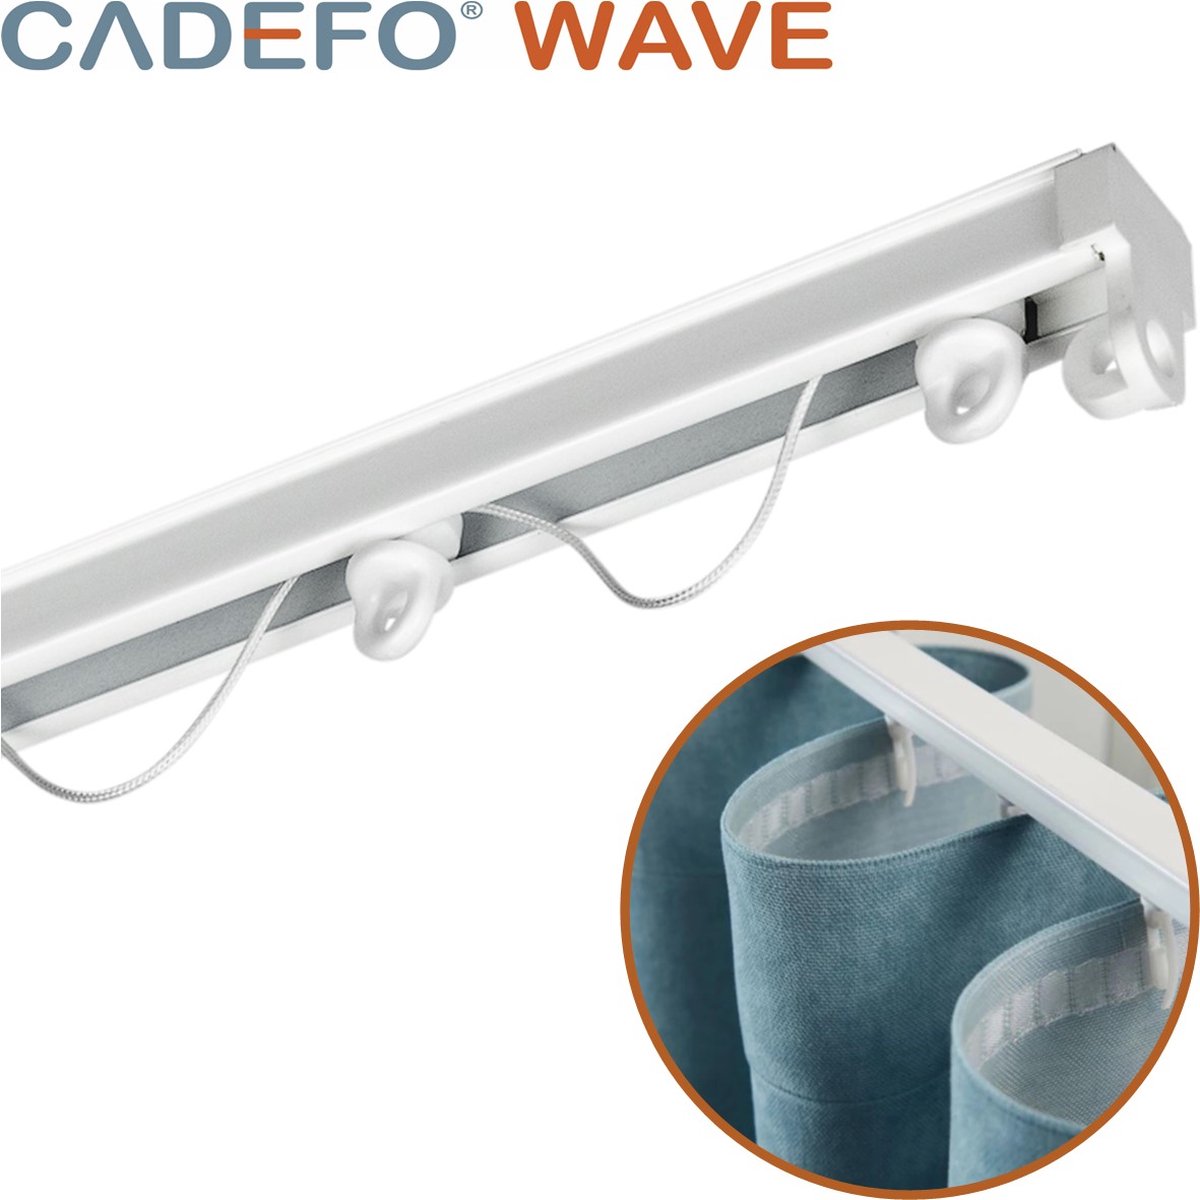 CADEFO WAVE (451 - 500 cm) Gordijnrails - Compleet op maat! - UIT 1 STUK - Leverbaar tot 6 meter - Plafondbevestiging - Lengte 471 cm